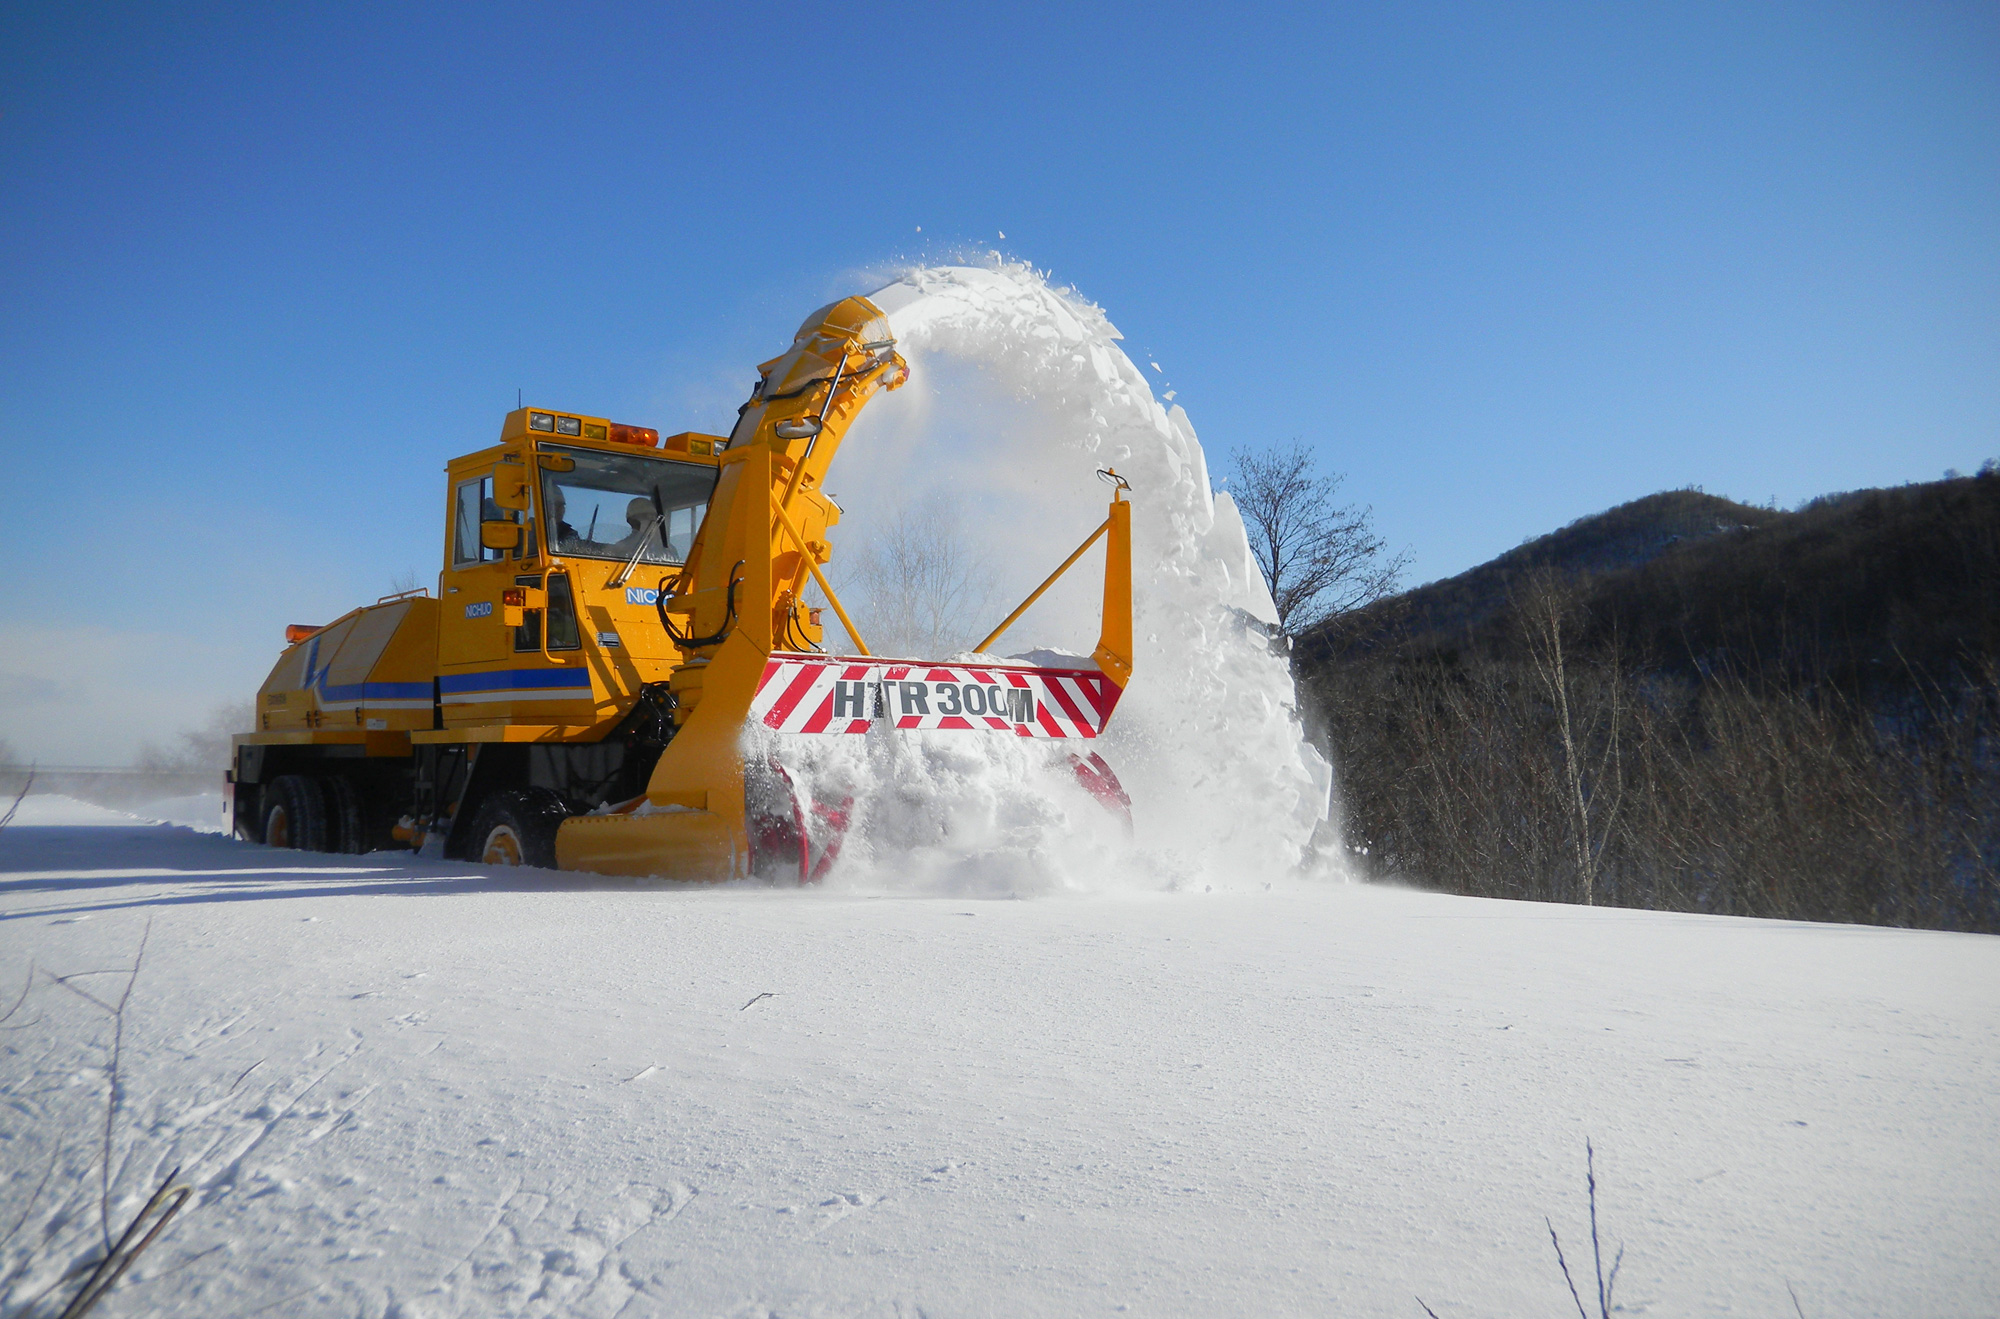 カワサキの関係会社が開発 製造している除雪車 Htr300m カワサキ特派員 カワサキイチバン